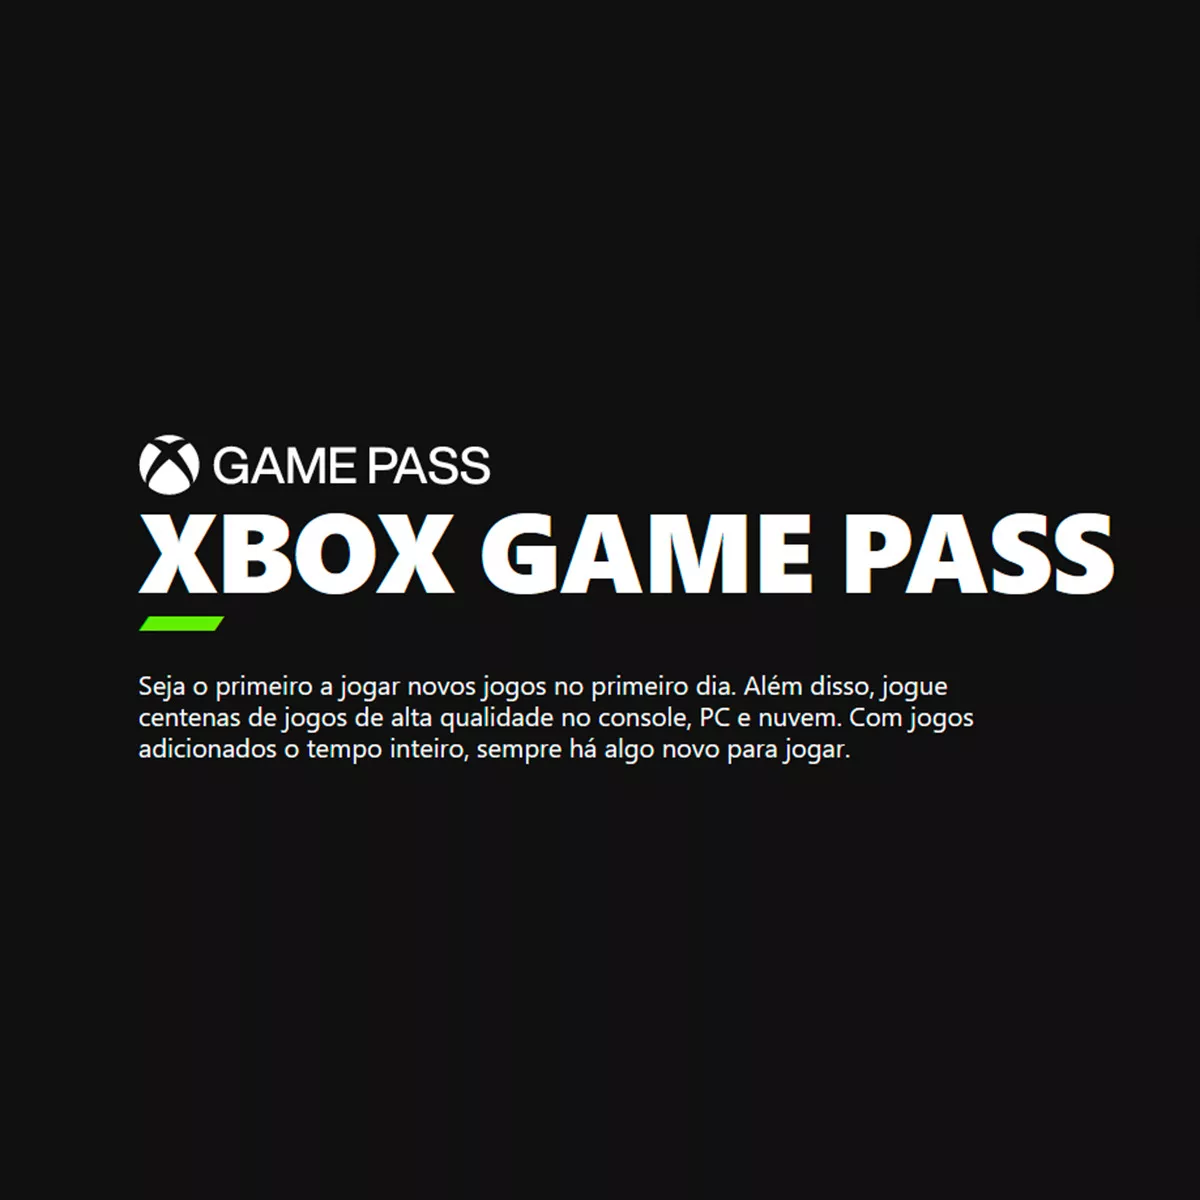 Xbox Game Pass Ultimate 1 Mês - 25 Dígitos - Escorrega o Preço